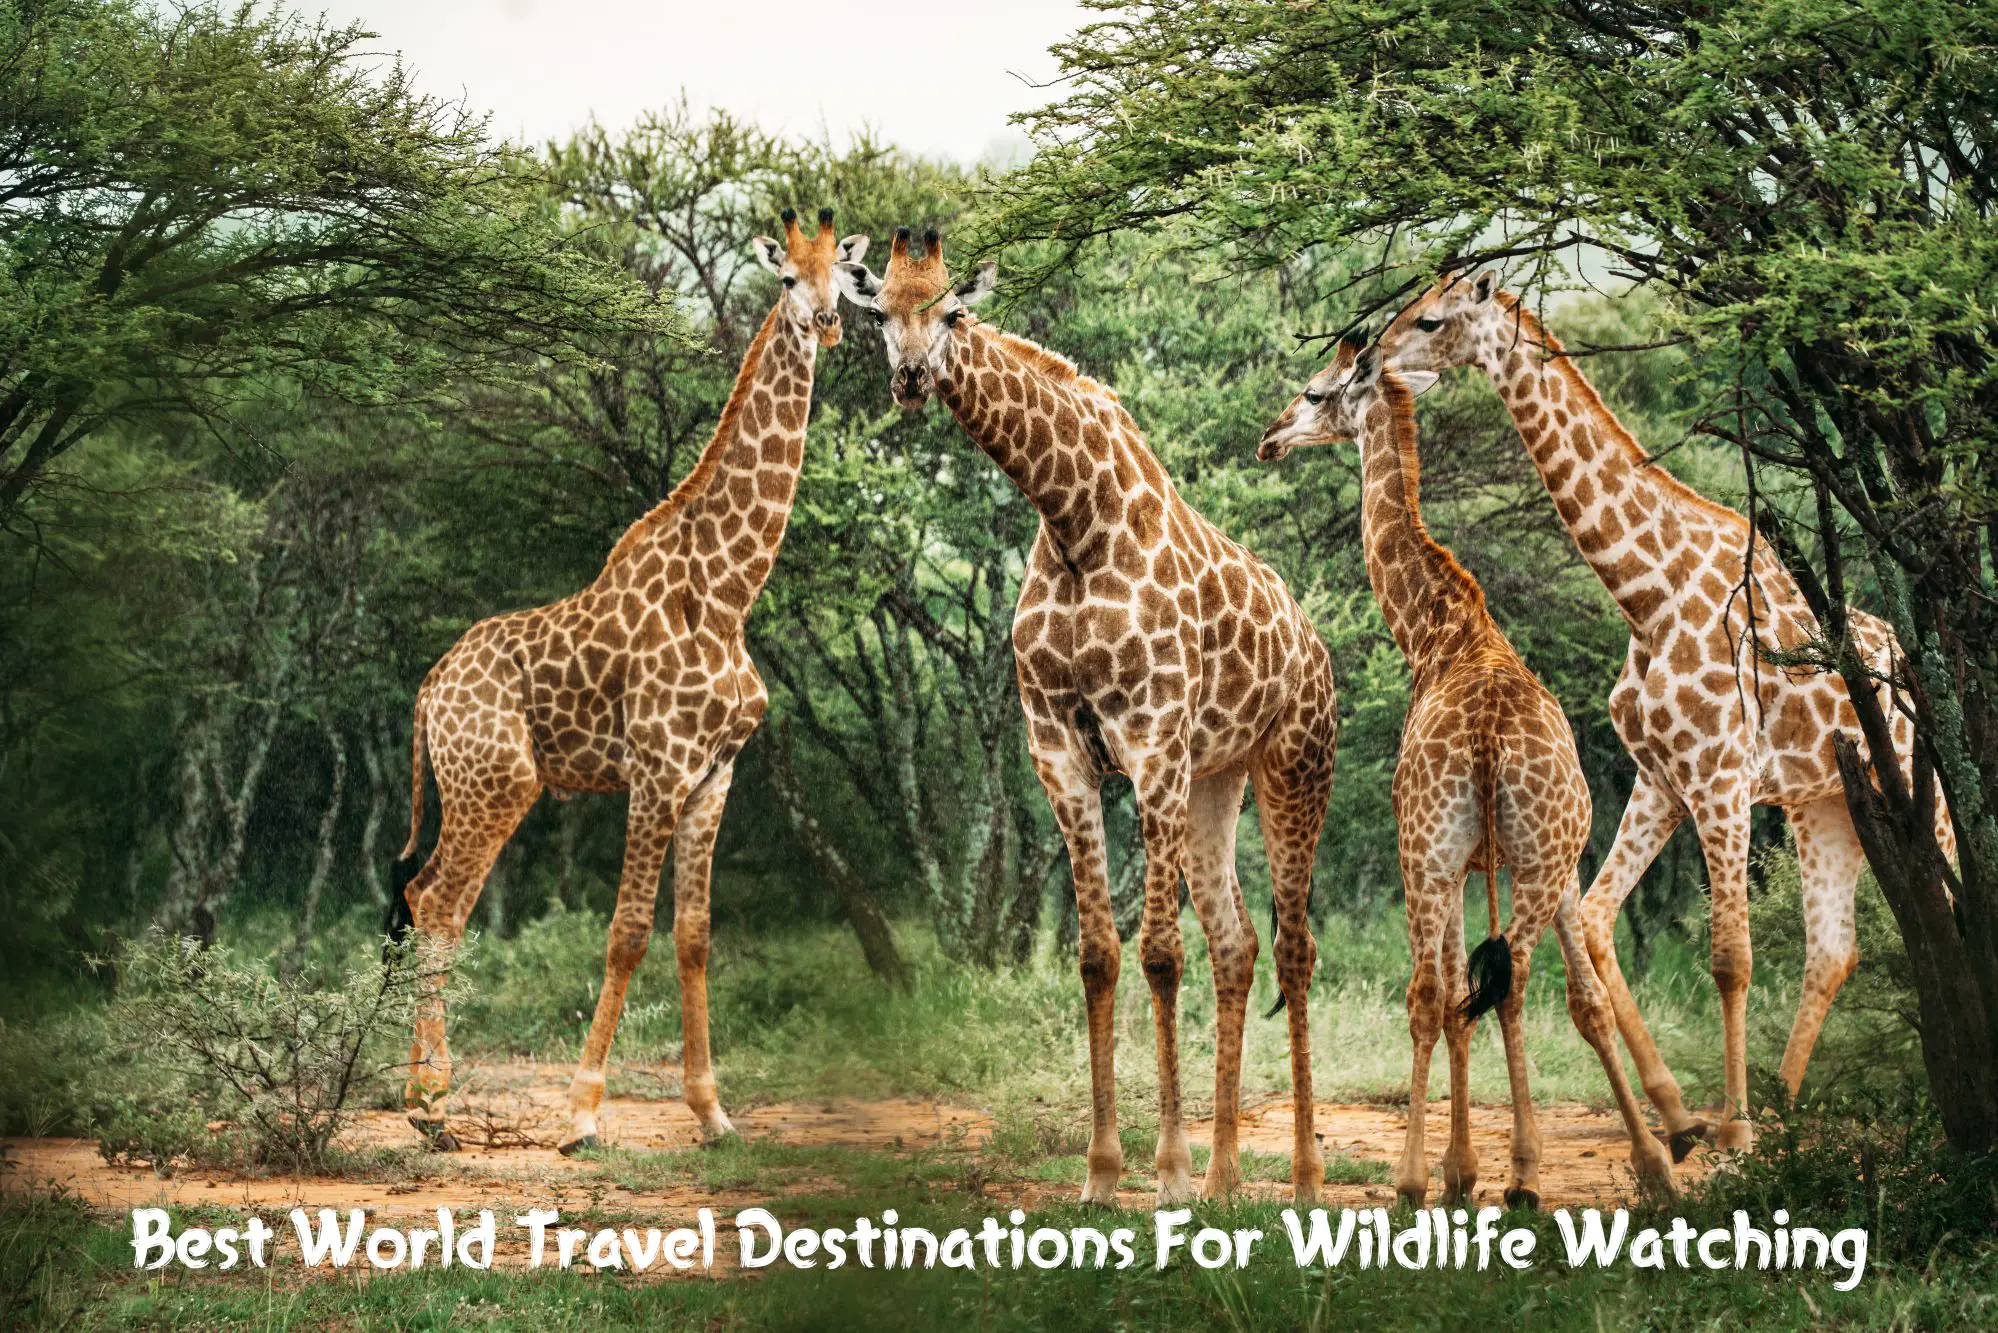 Best World Travel Destinations For Wildlife Watching